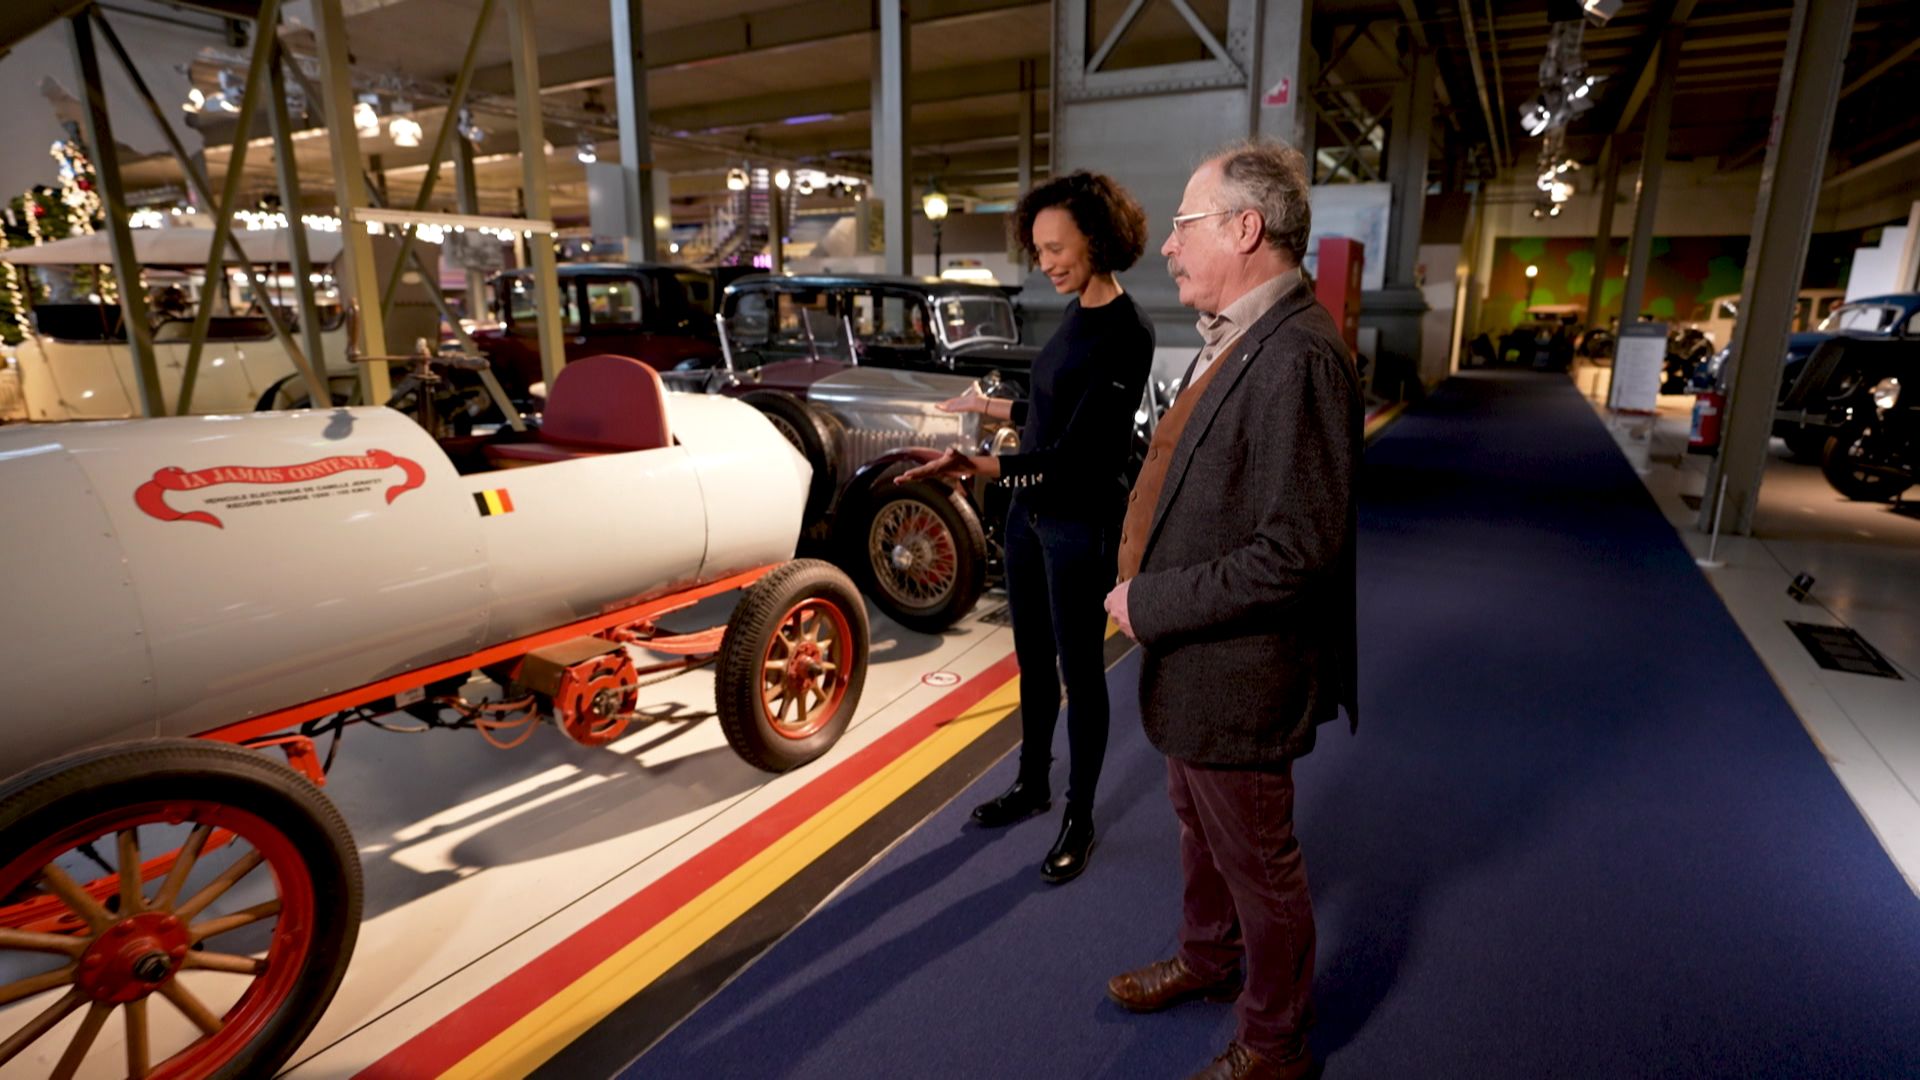 Le musée Autoworld possède une collection exceptionnelle : plus de 300 véhicules dans un état impeccable.